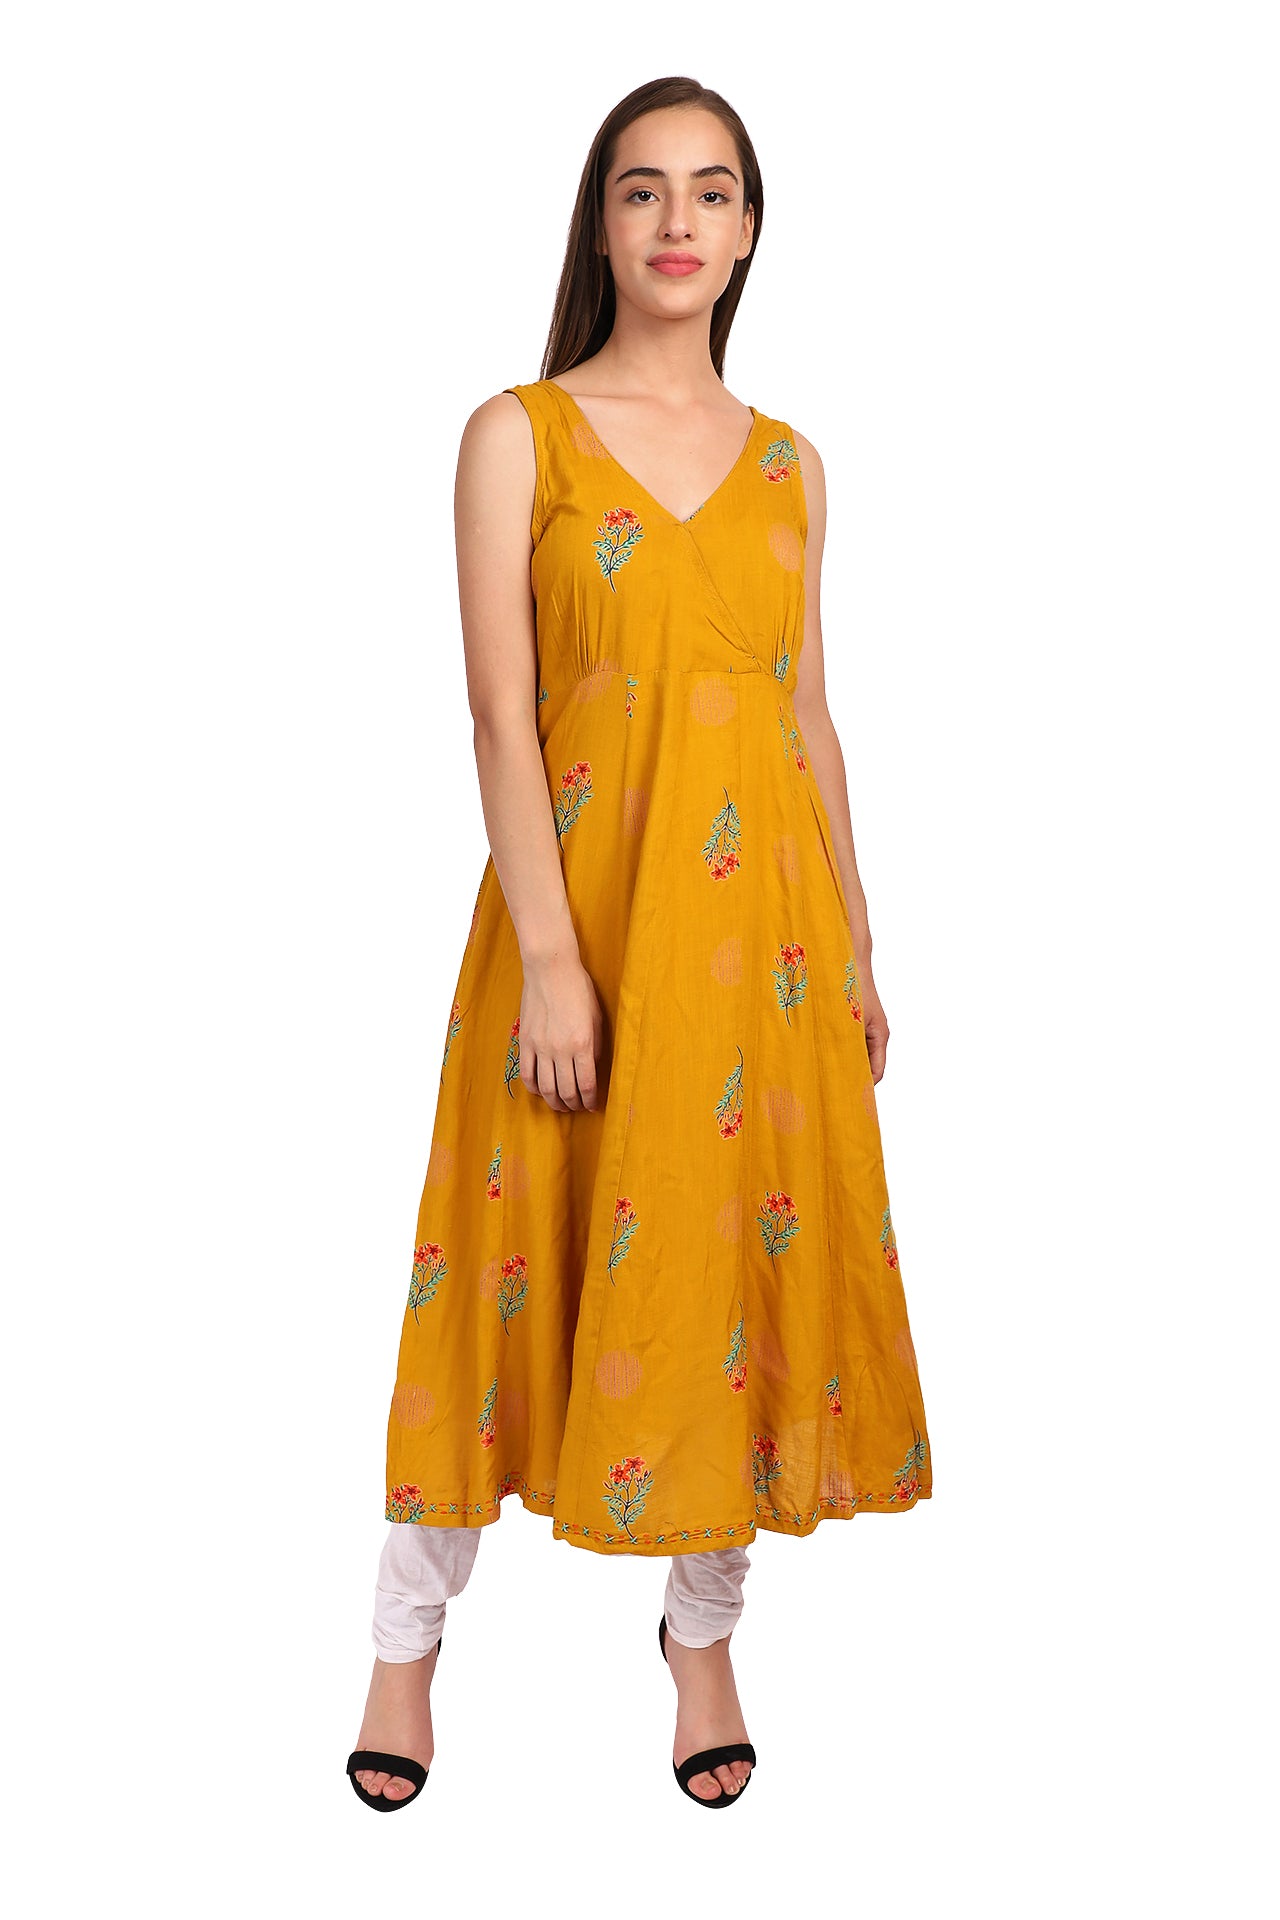 Amodini yellow printed rayon dress